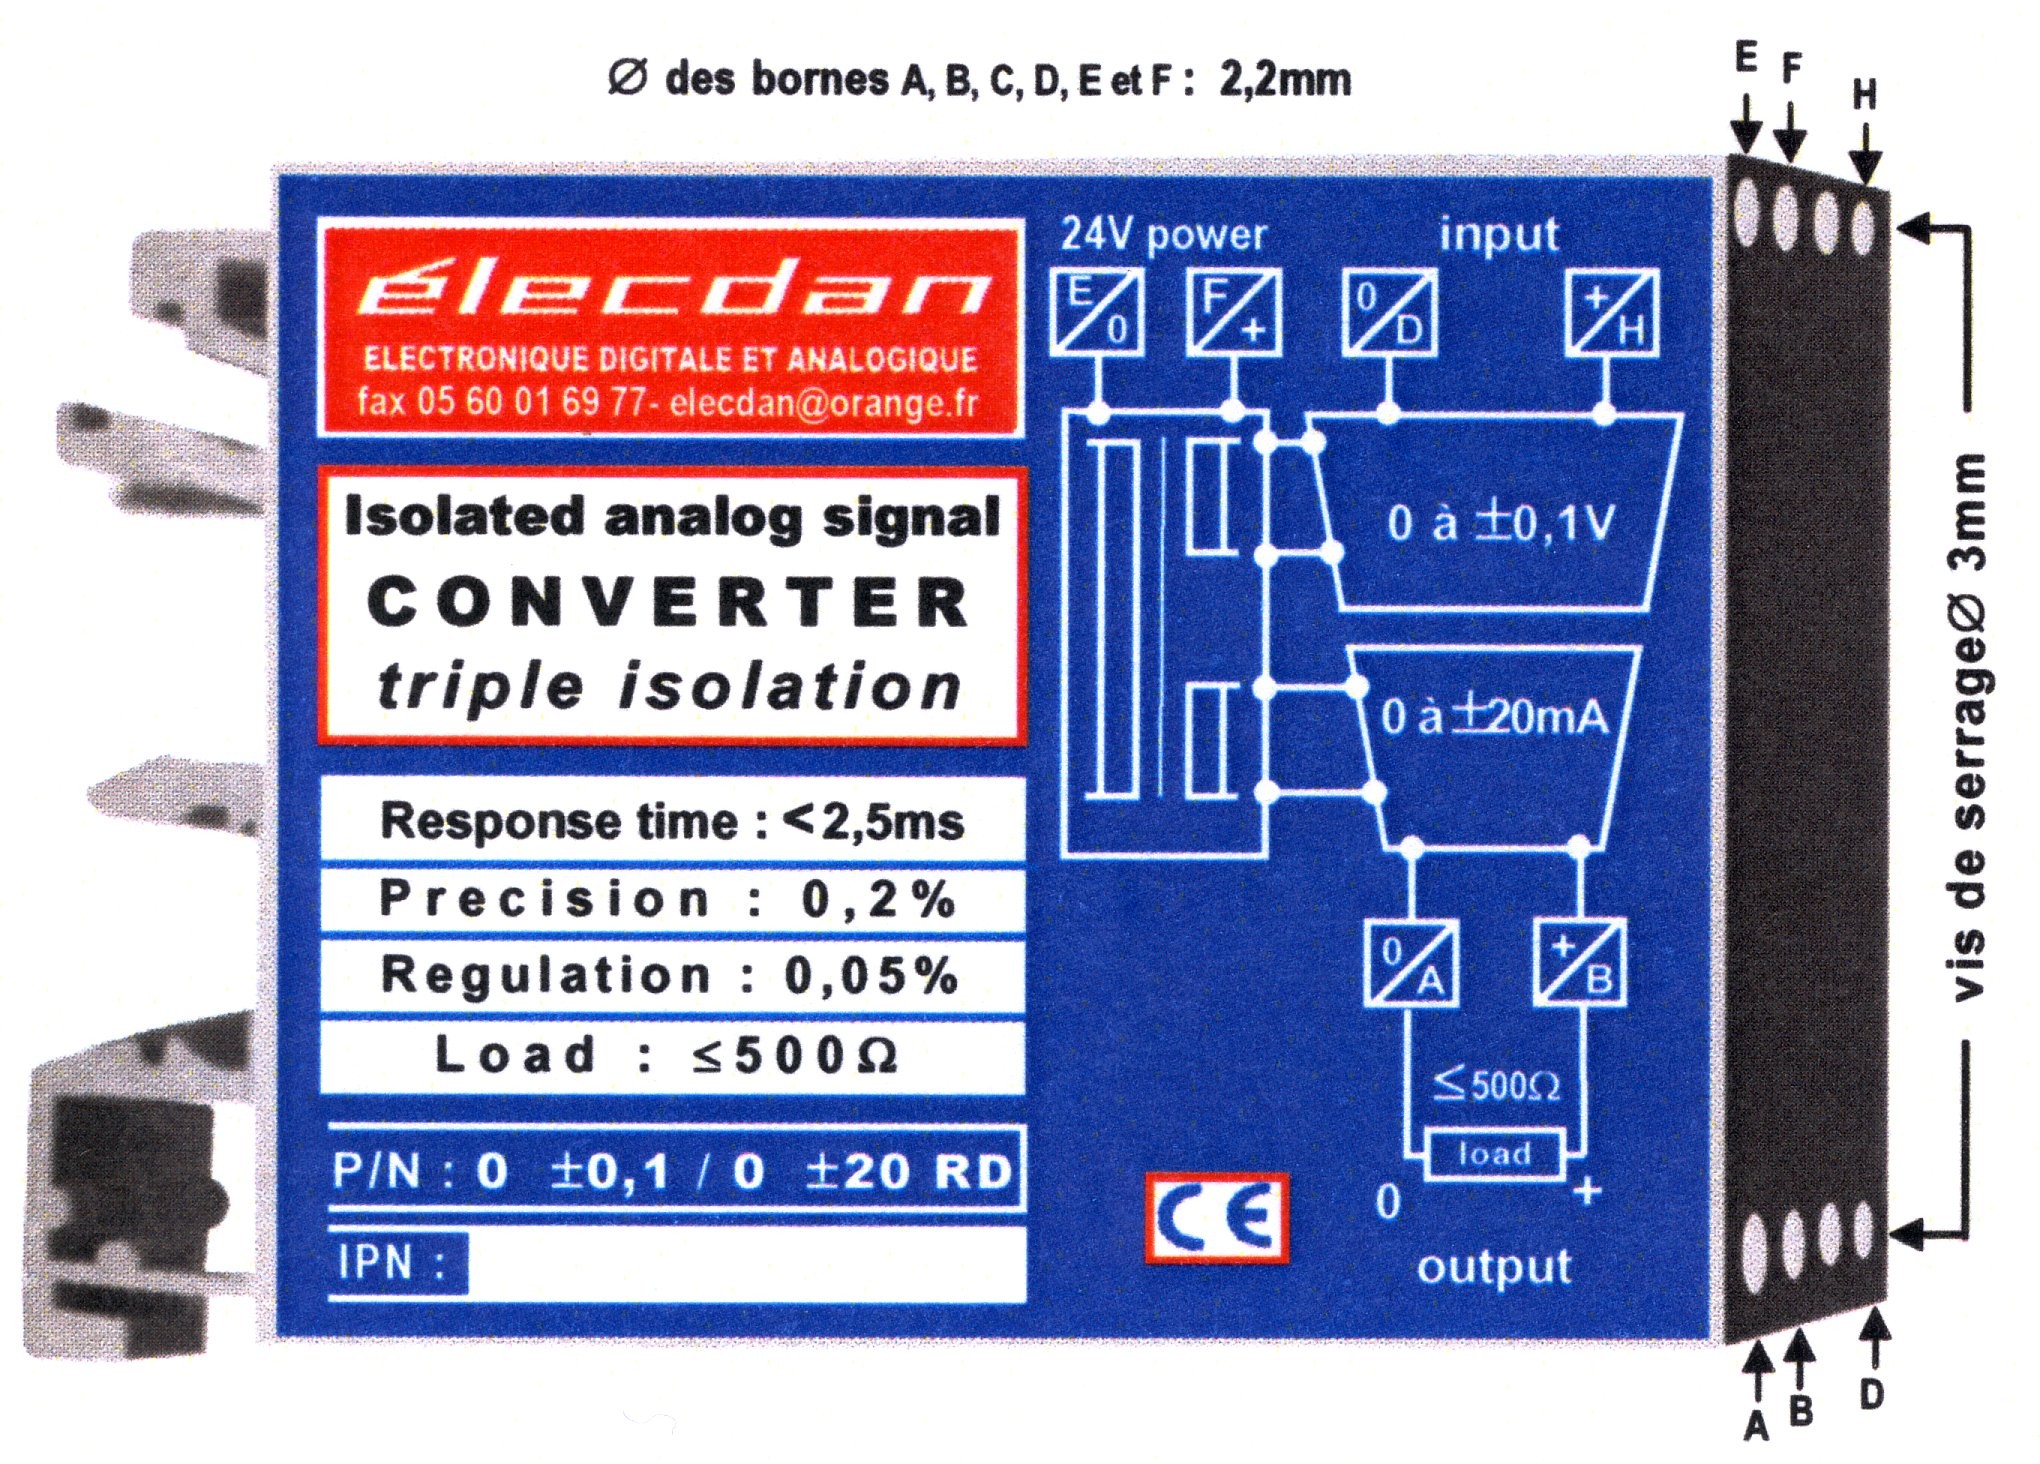 Boîtier pour RAIL DIN 66 x 53 x 22.5mm - réf. 0 +-100mV / 0 +-20 RD 